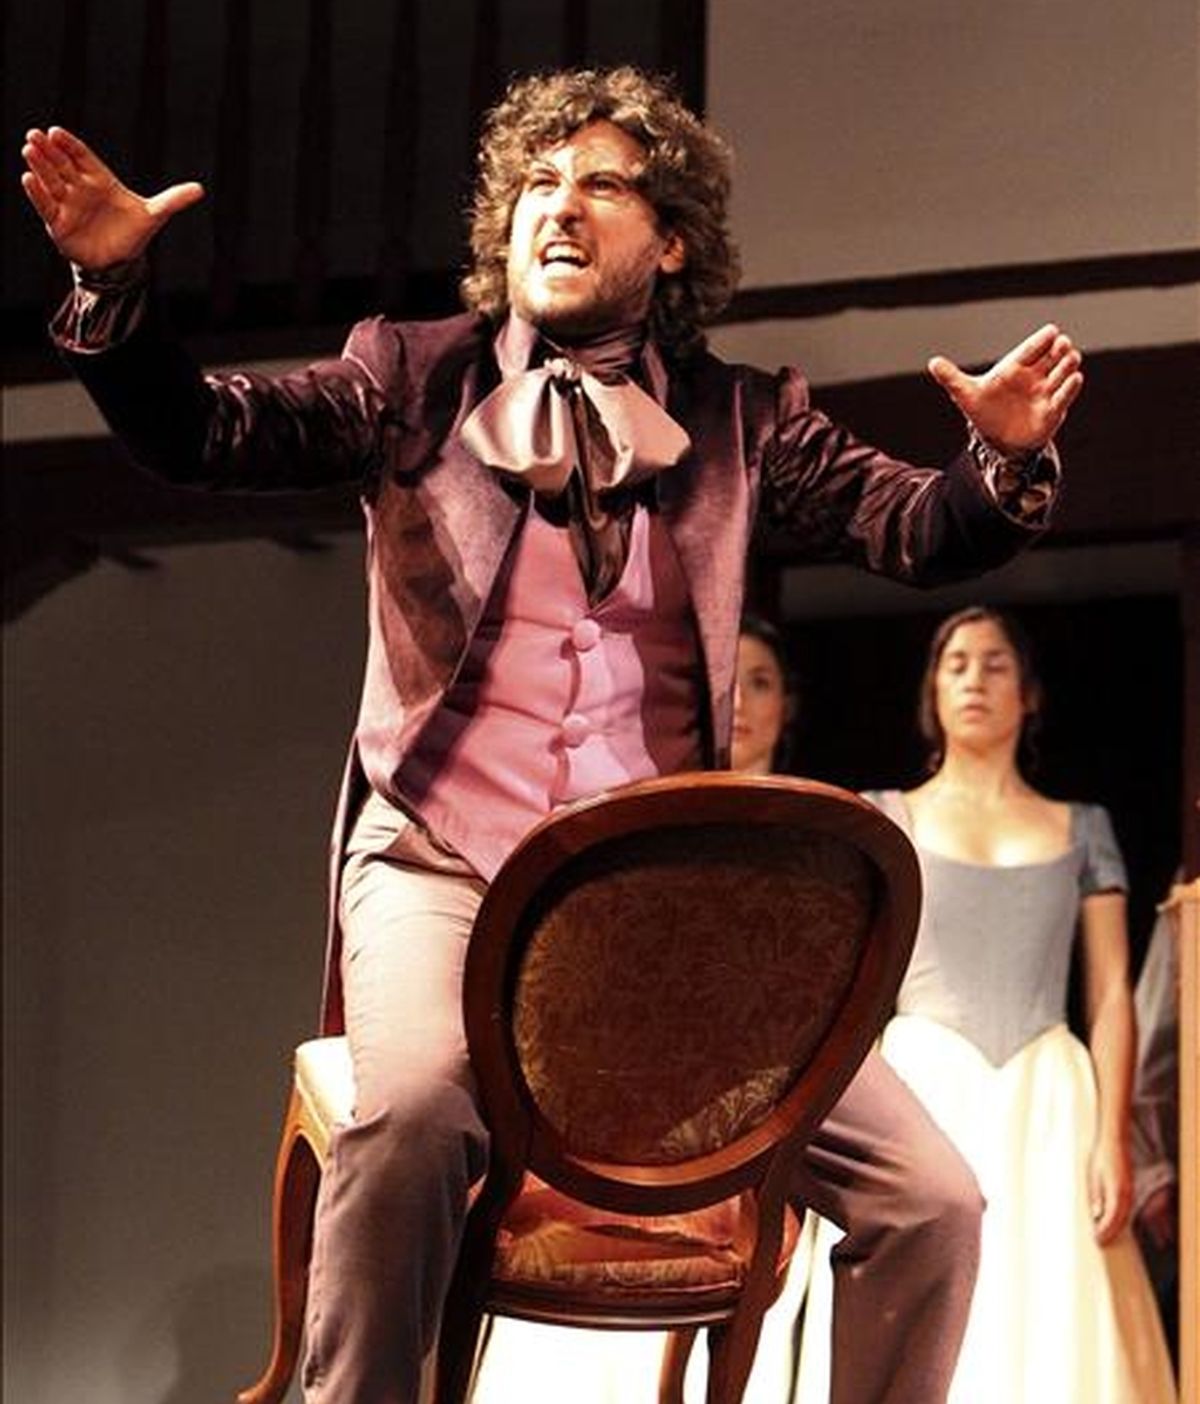 El actor Francesco Carril, que interpreta a Don Juan, durante el pase gráfico de "La moza de cántaro", una pieza teatral de Lope de Vega, en el Corral de Comedias de Almagro, dentro de la programación del Festival de Teatro Clásico de la localidad castellano-manchega. EFE